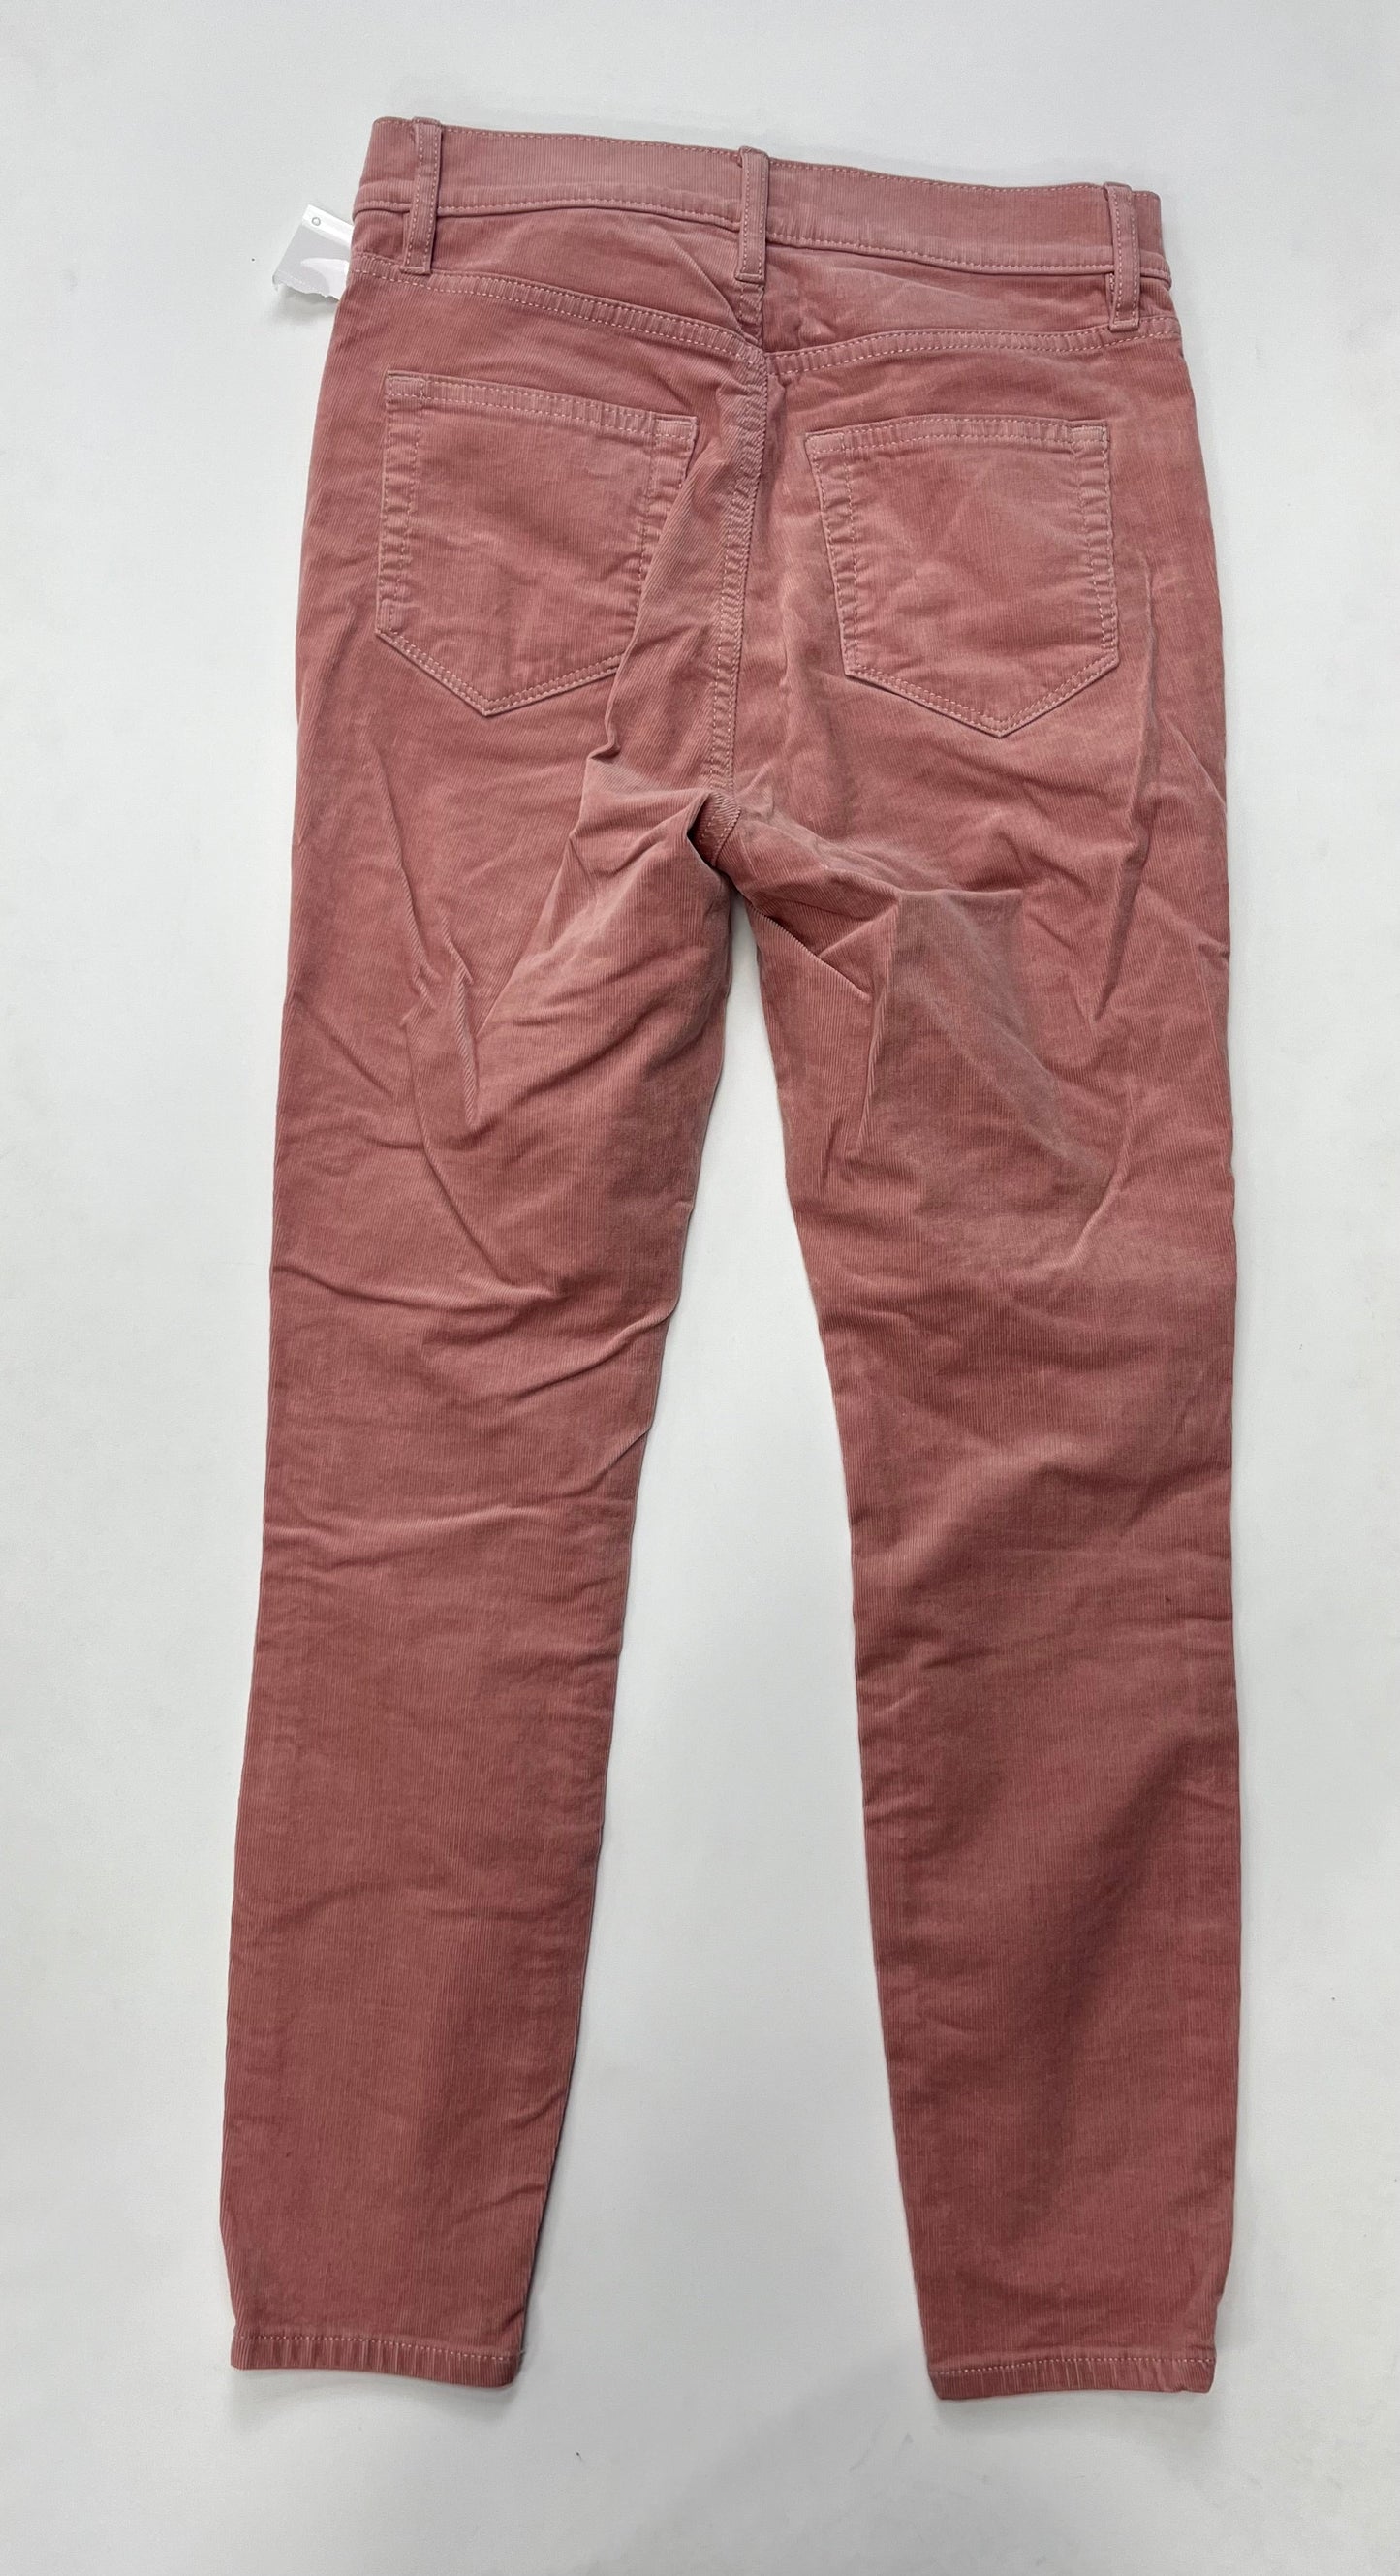 Pants Corduroy By Loft  Size: 0